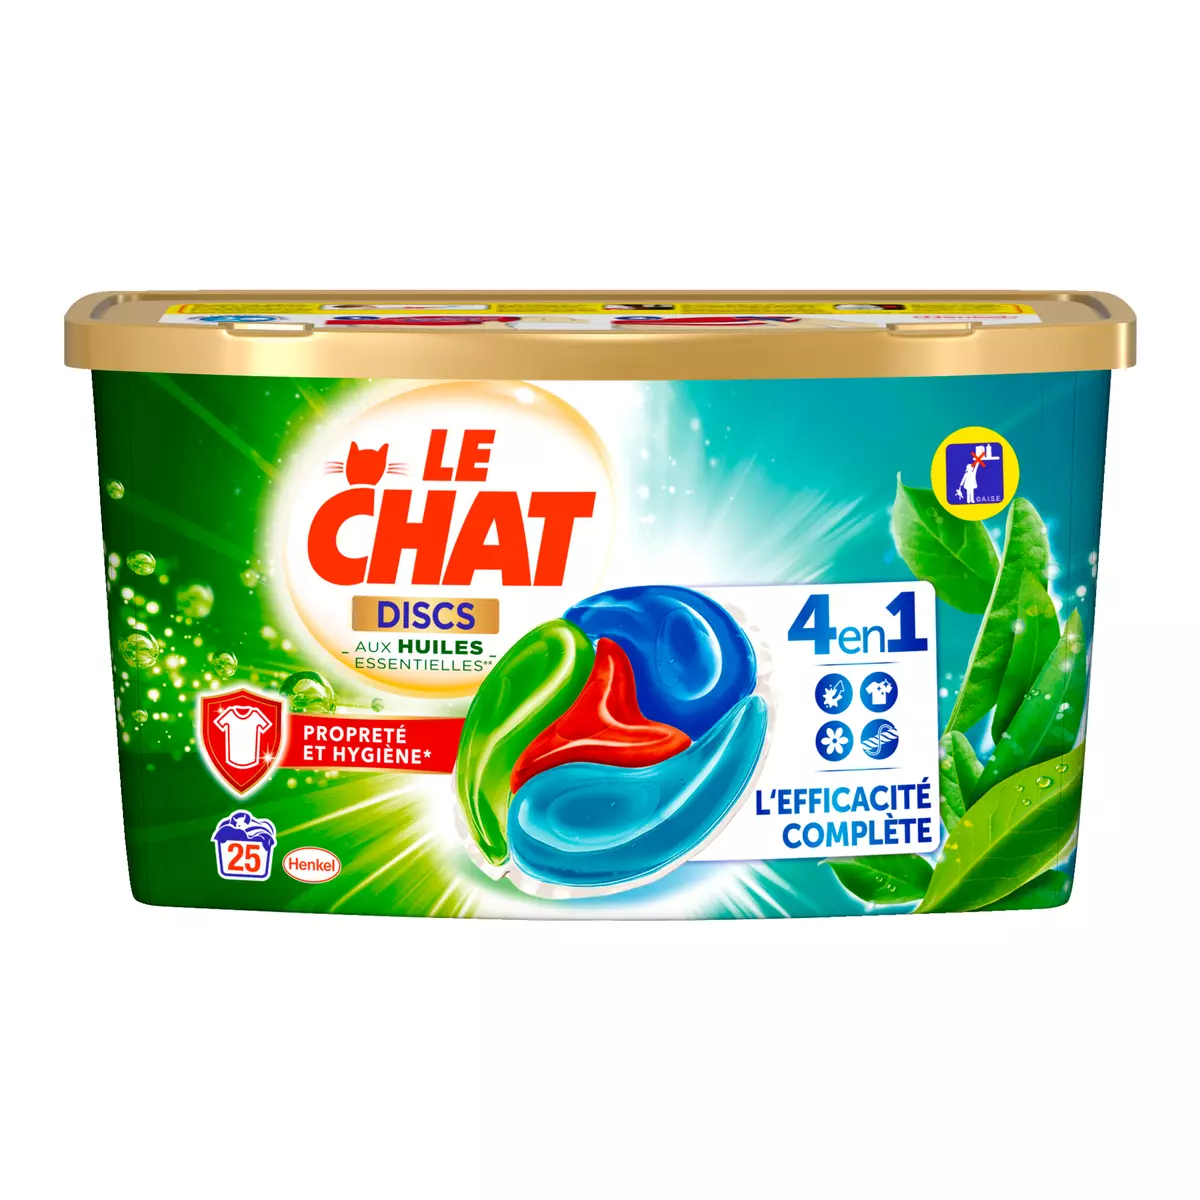 LE CHAT Disc Lessive en capsules 4en1 aux huiles essentielles 25 lavages 625g